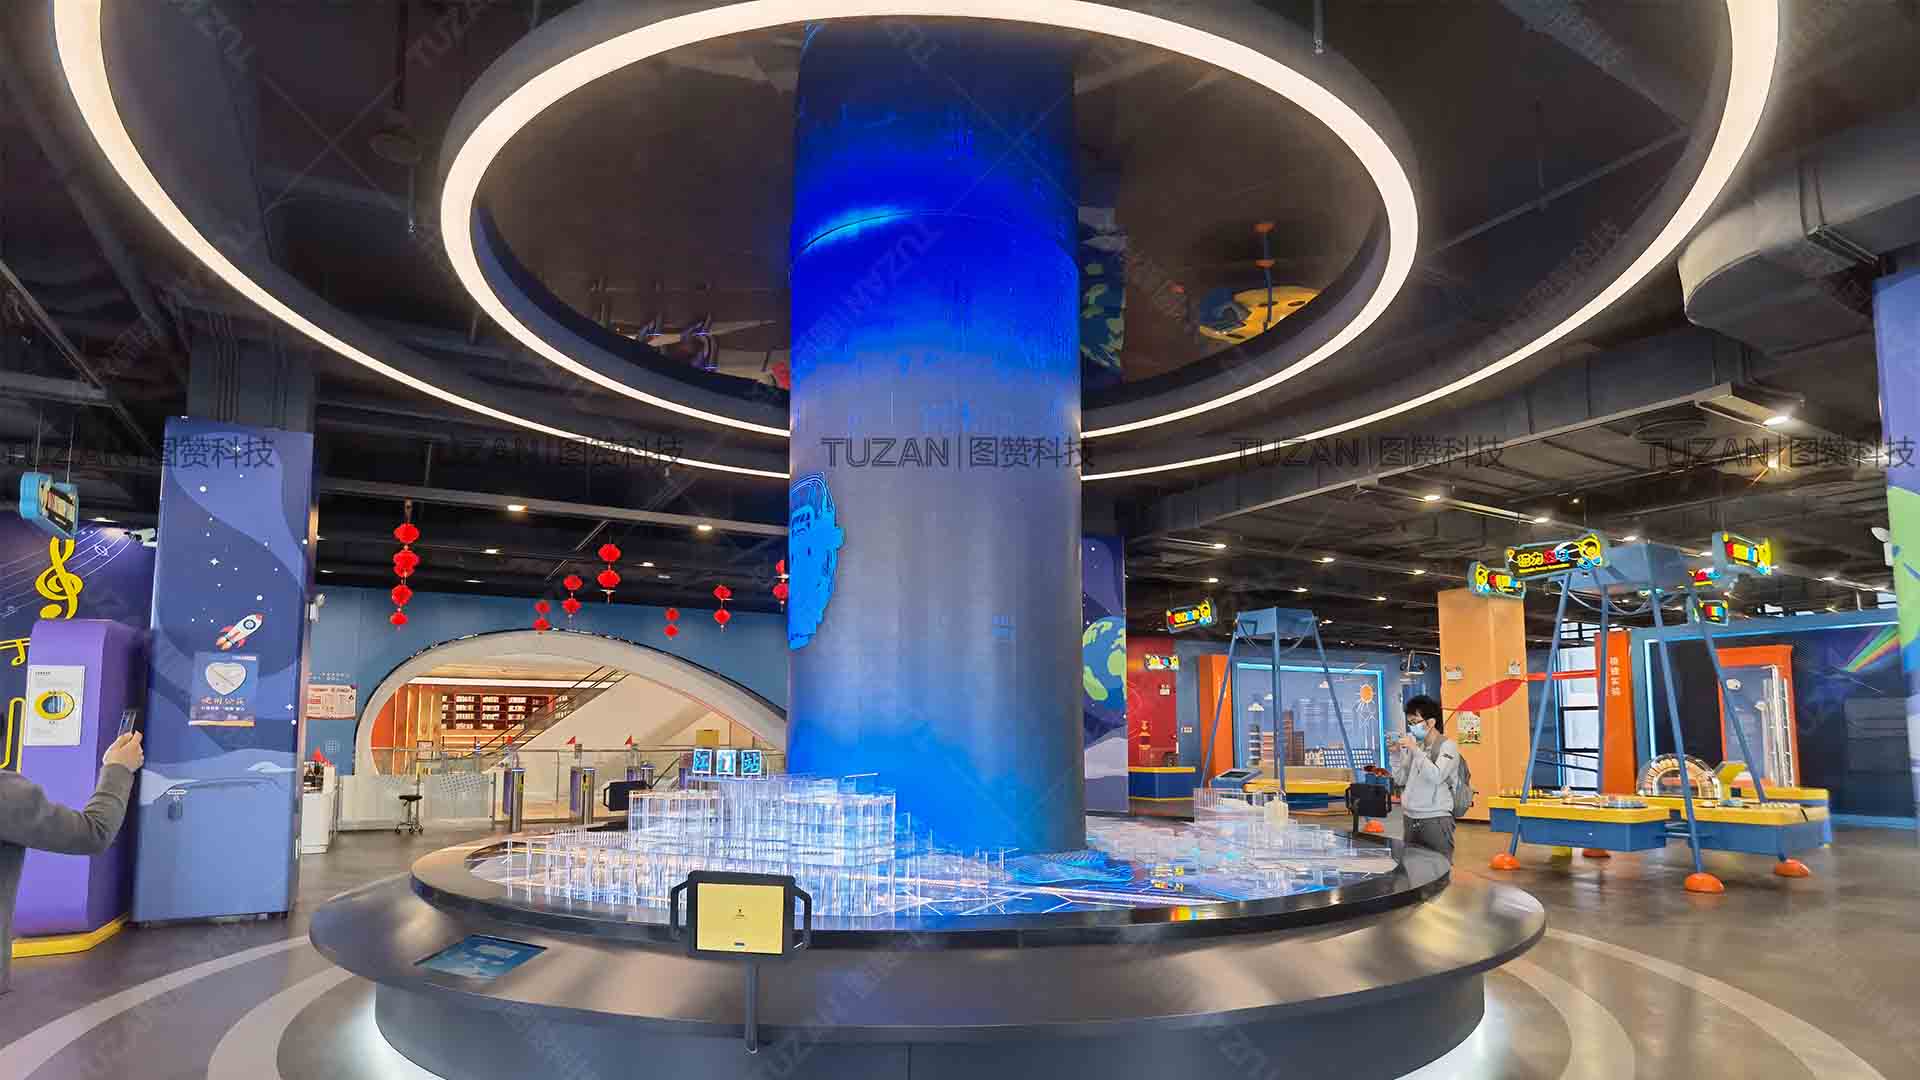 多媒体展厅的亮点设计-创意LED屏